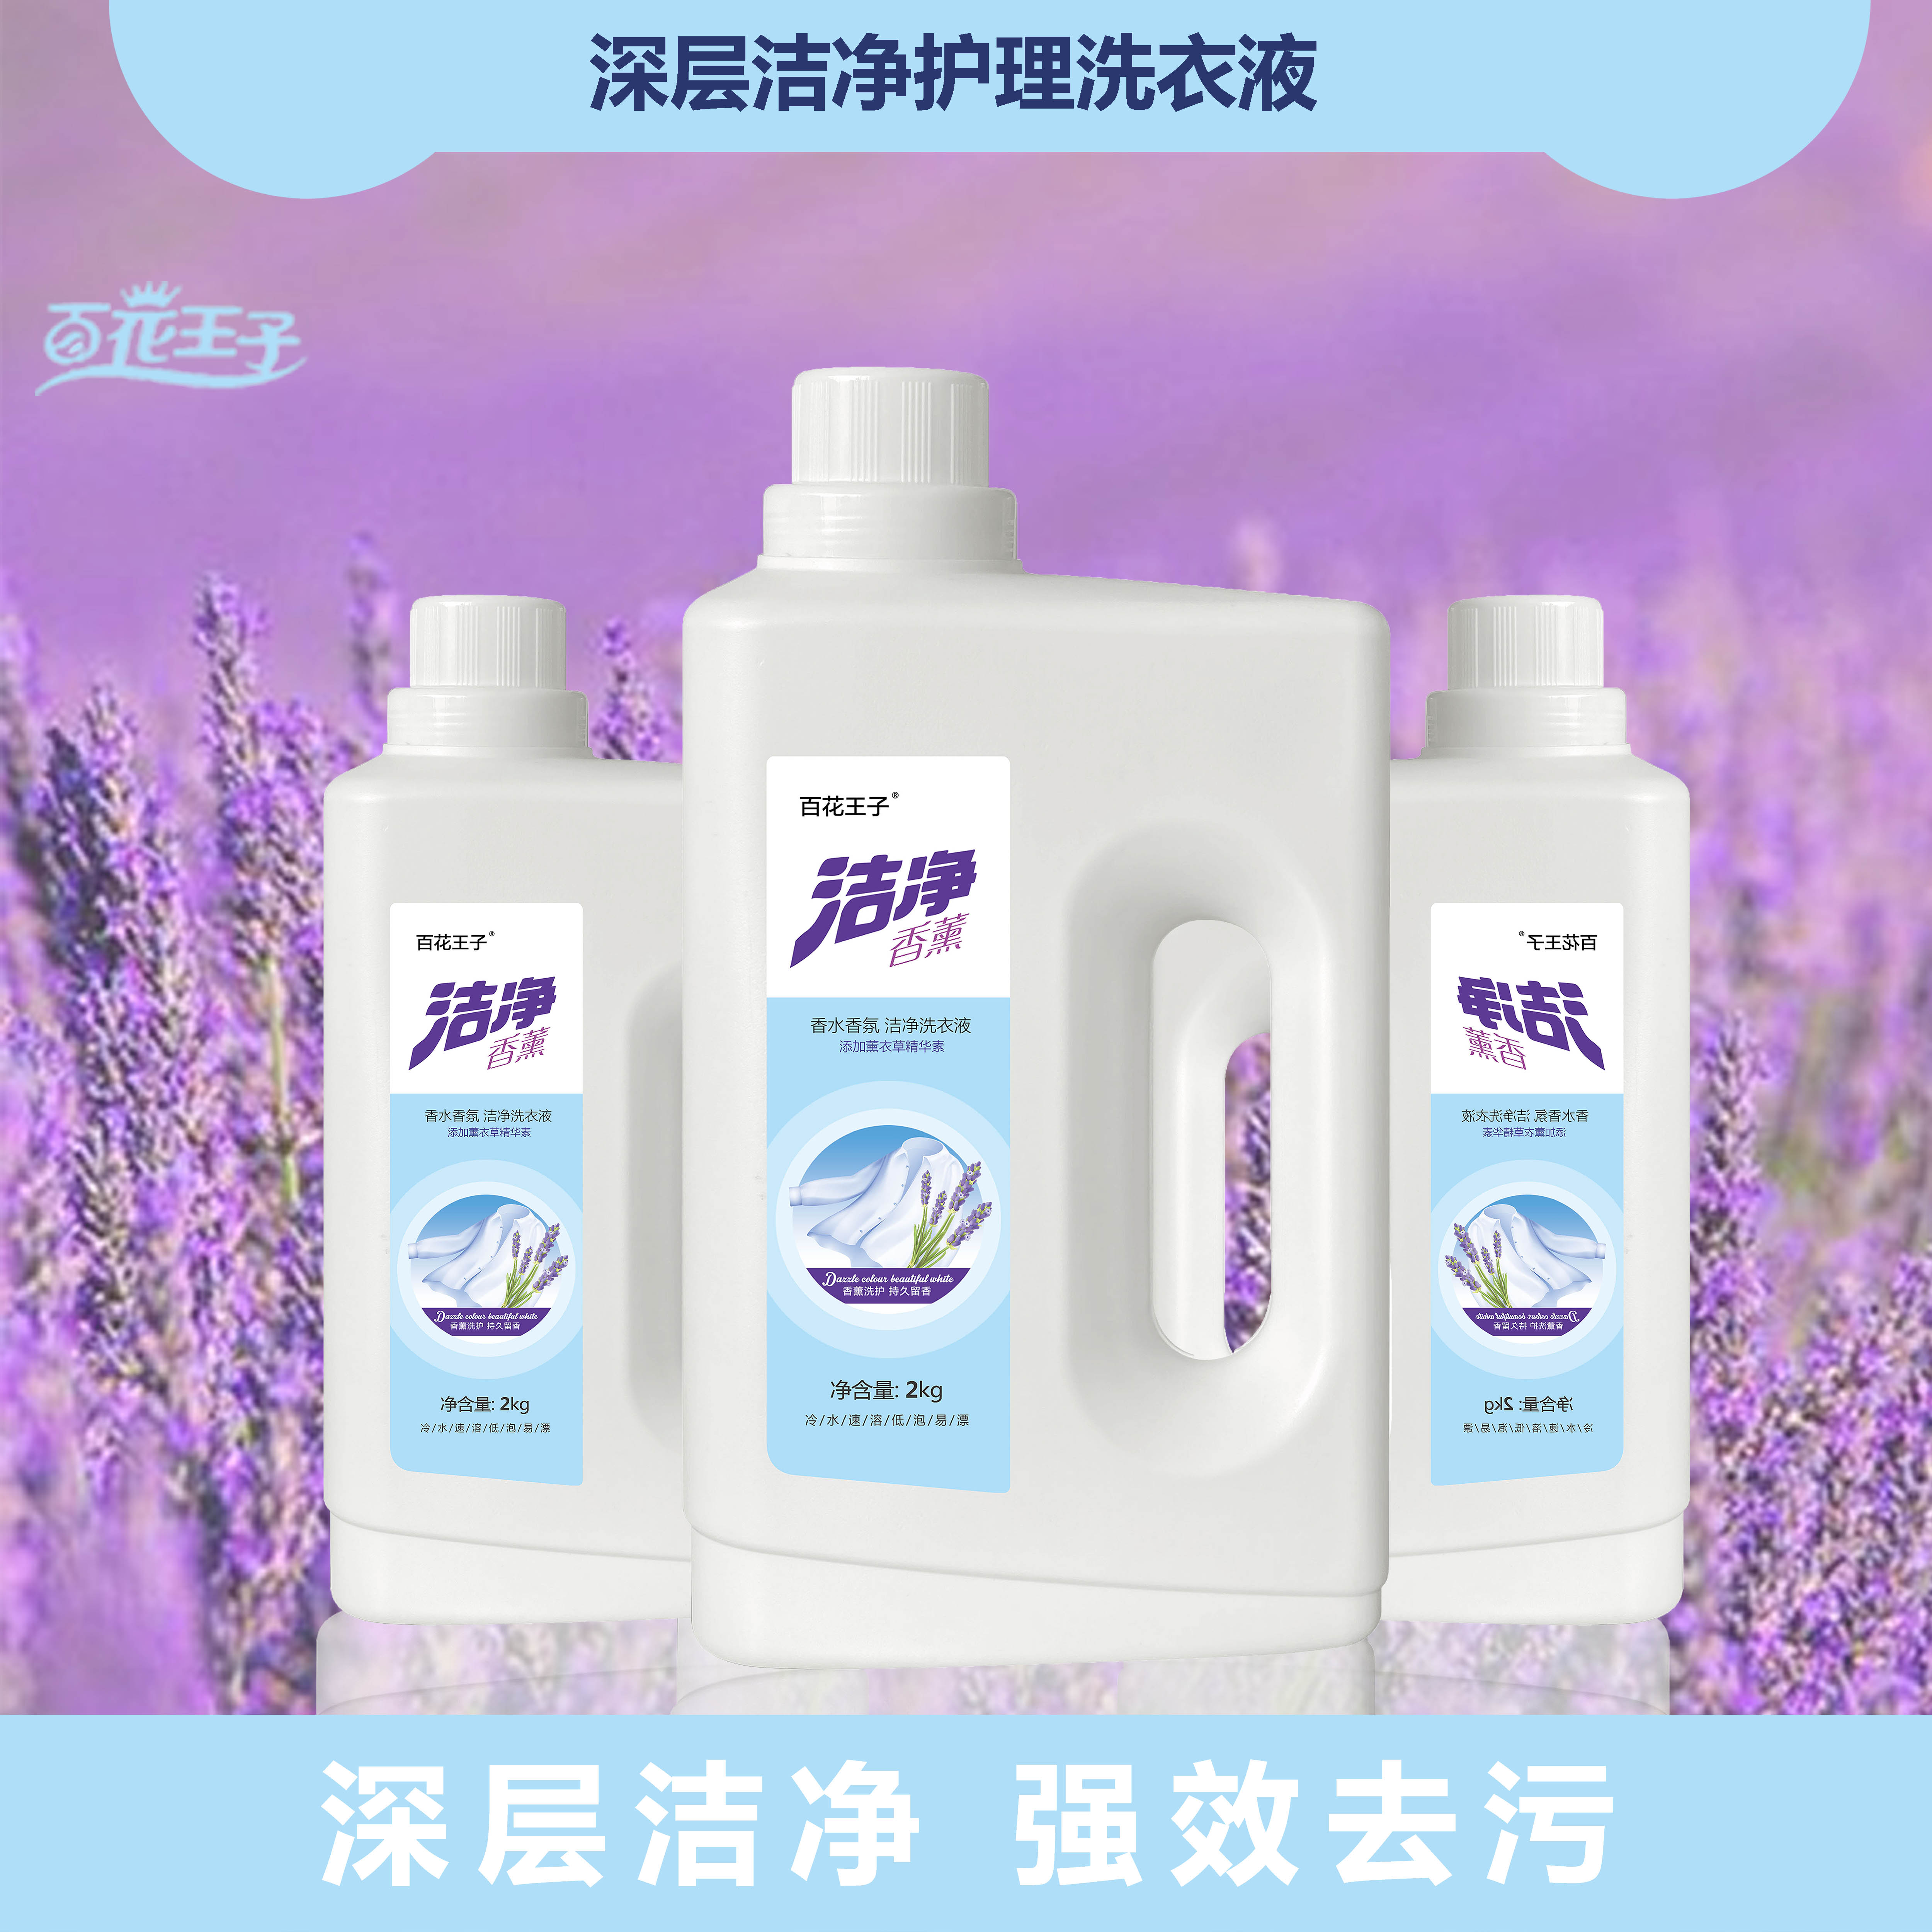 黄石荆州郑州洗衣液代加工的洗衣液是泡沫越多越好吗？